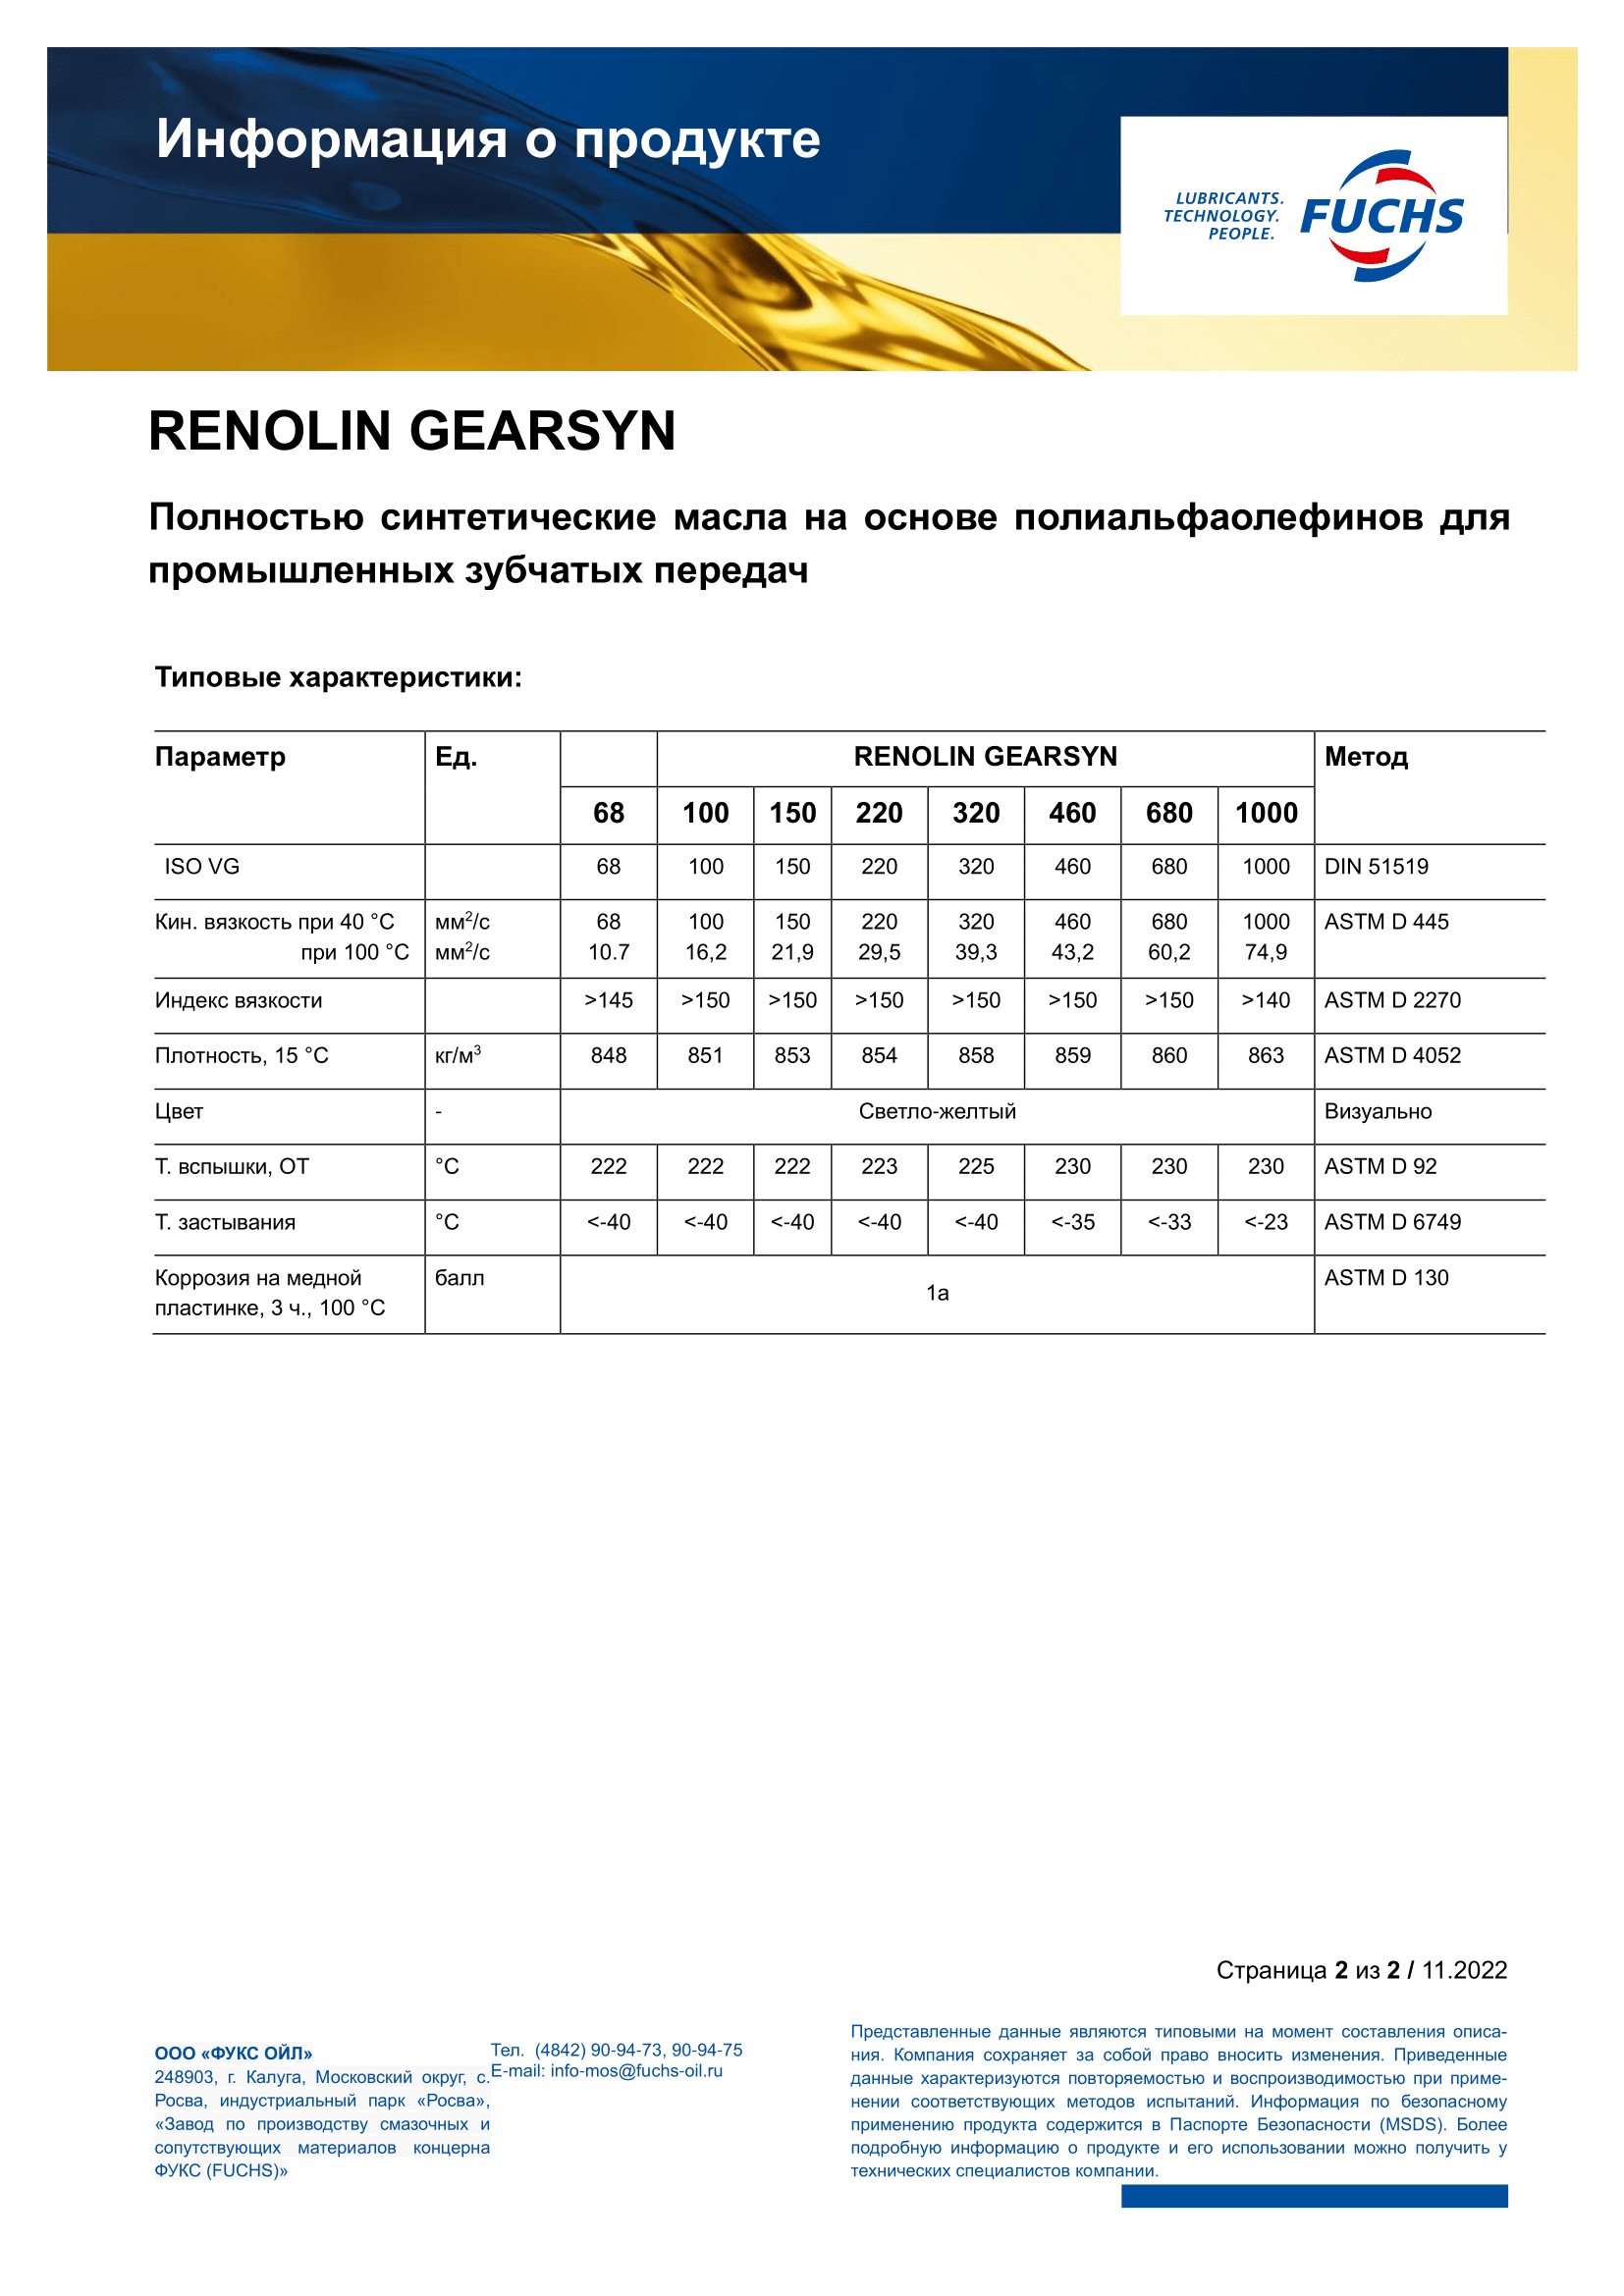 RENOLIN GEARSYN 680